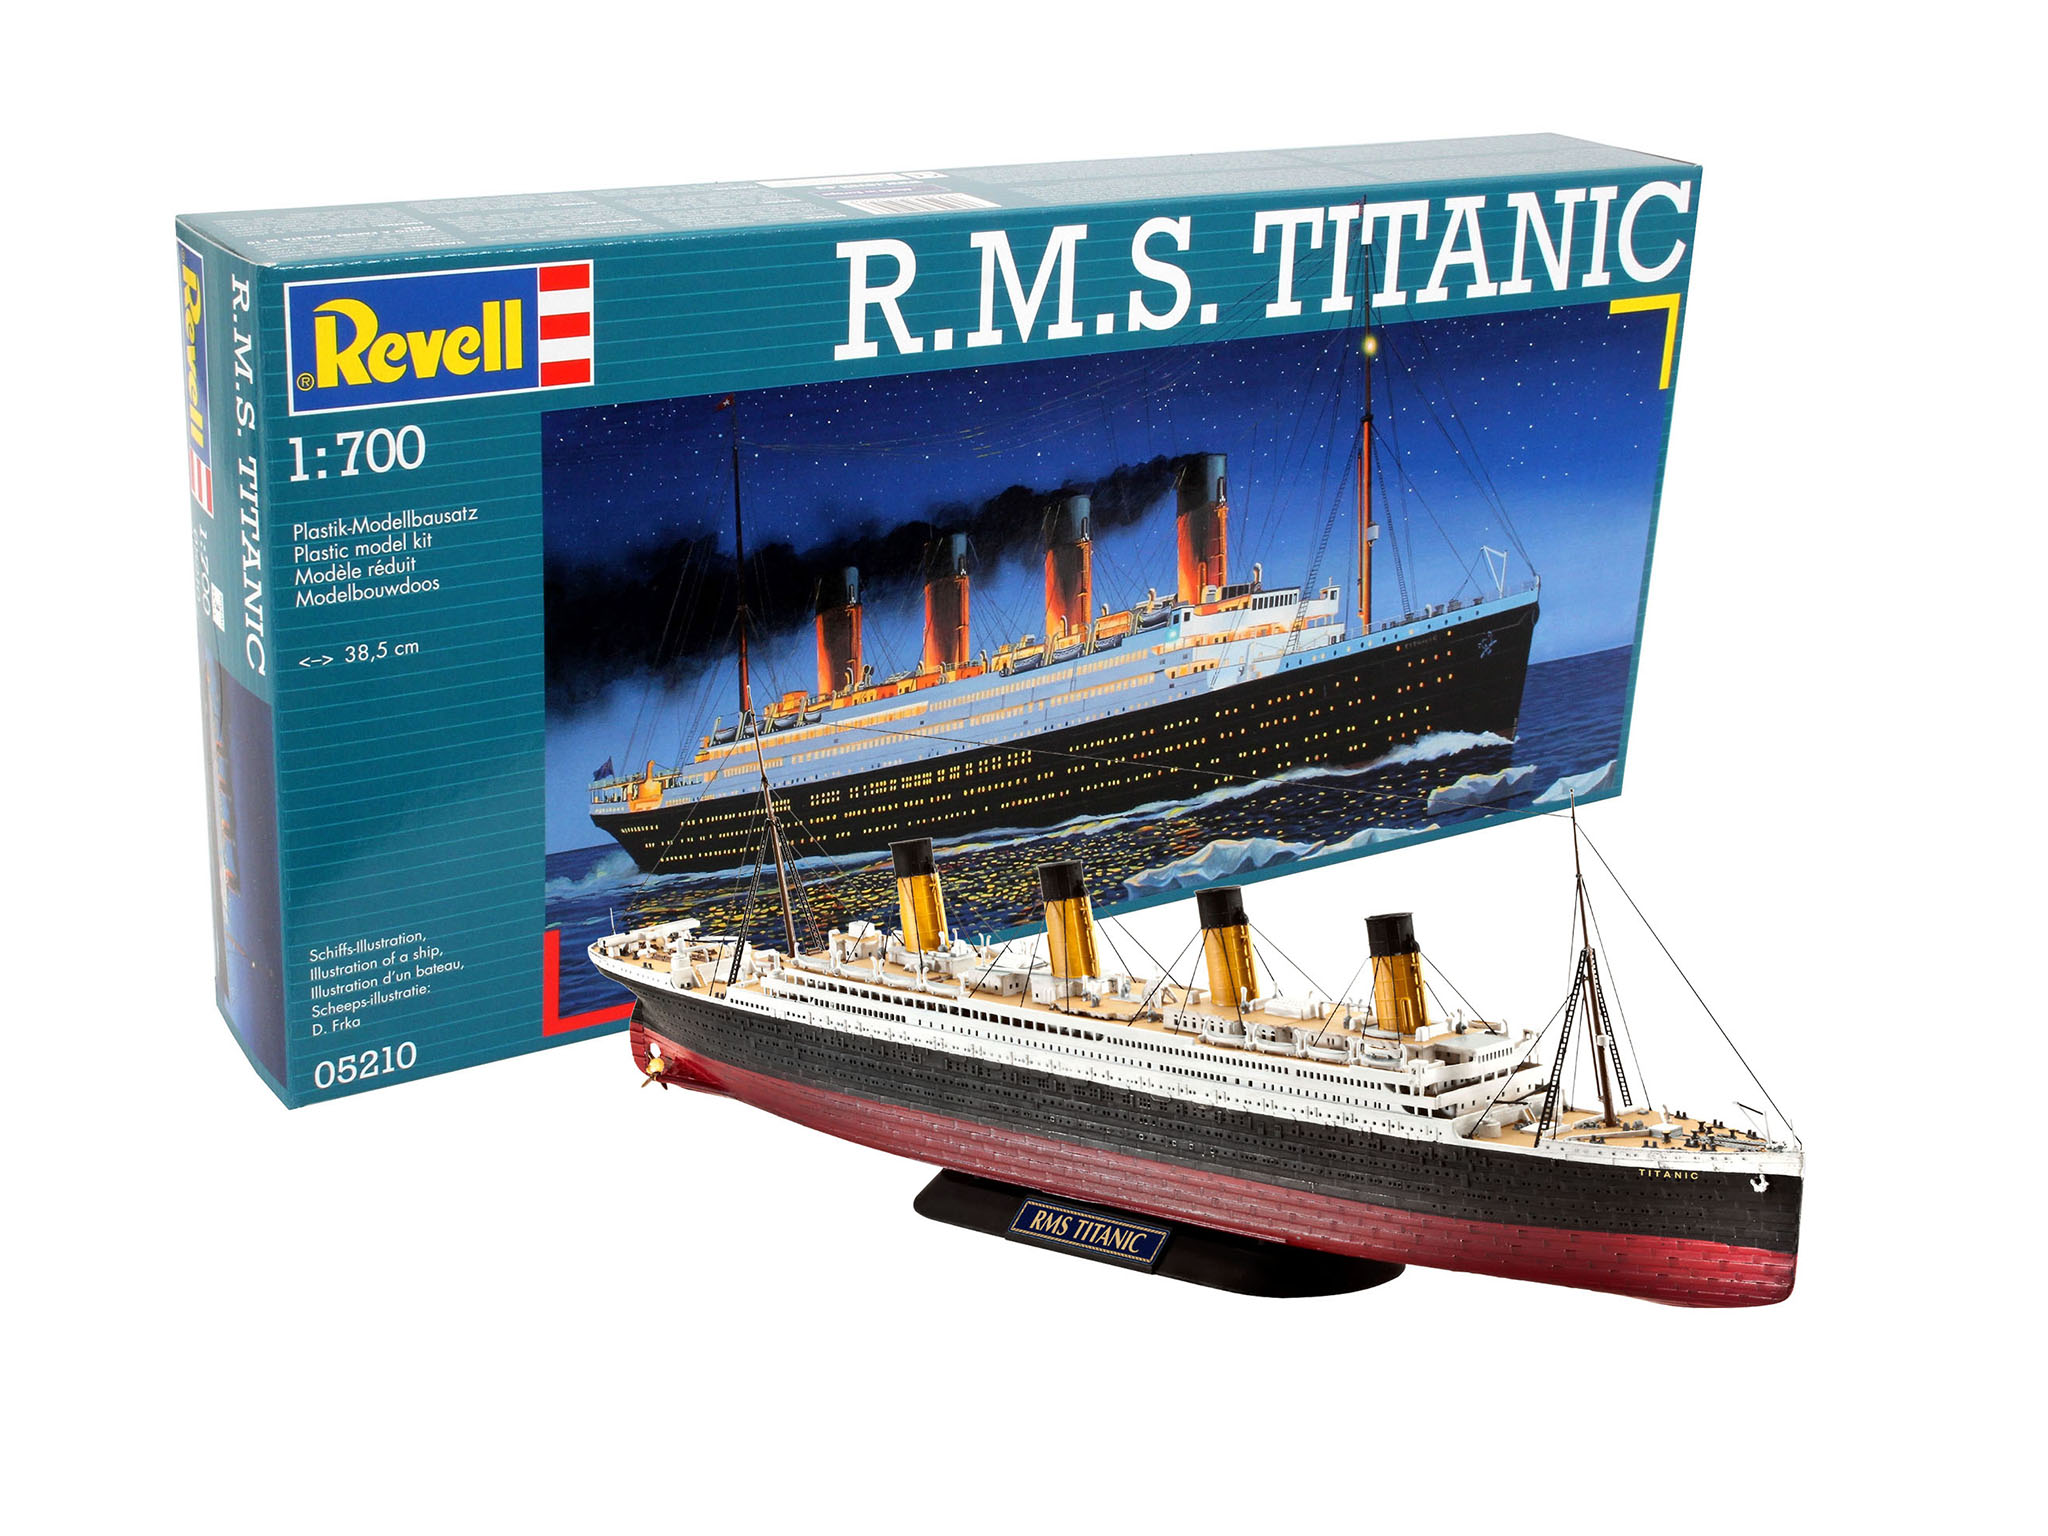 Revell Plastic Model Kit RMS Titanic 1 57 for sale online 